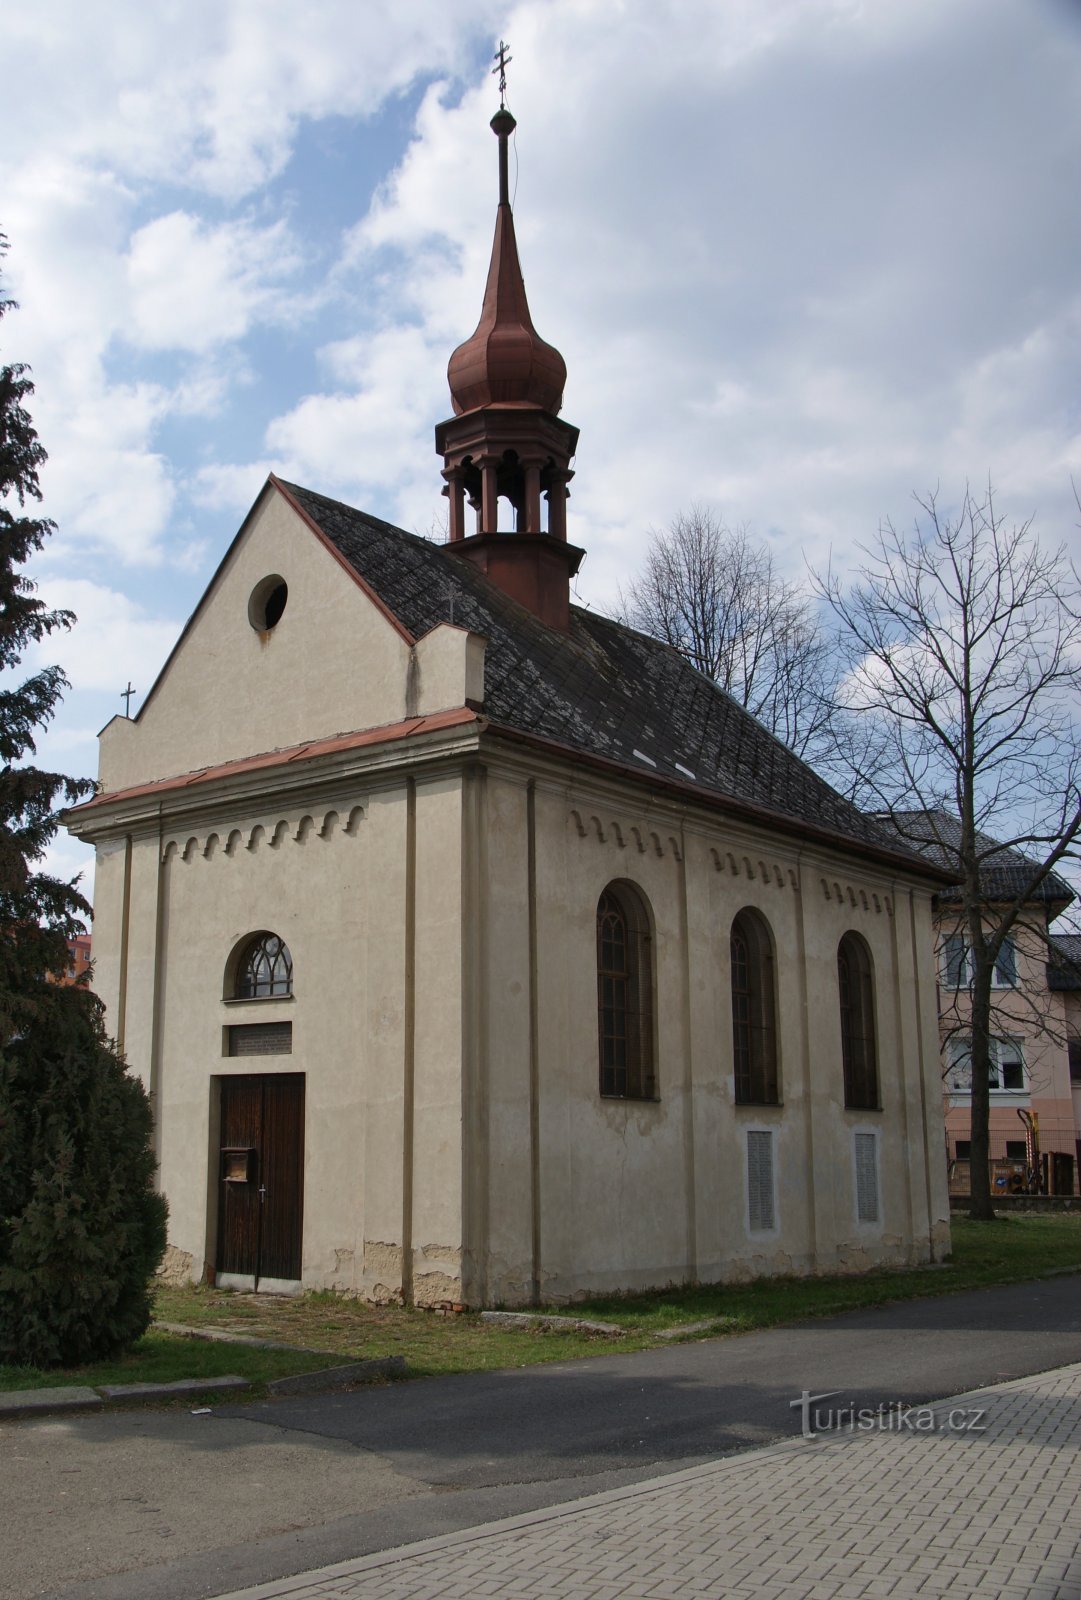 Dolní Temenice (Šumperk) – chapel of the Holy Family